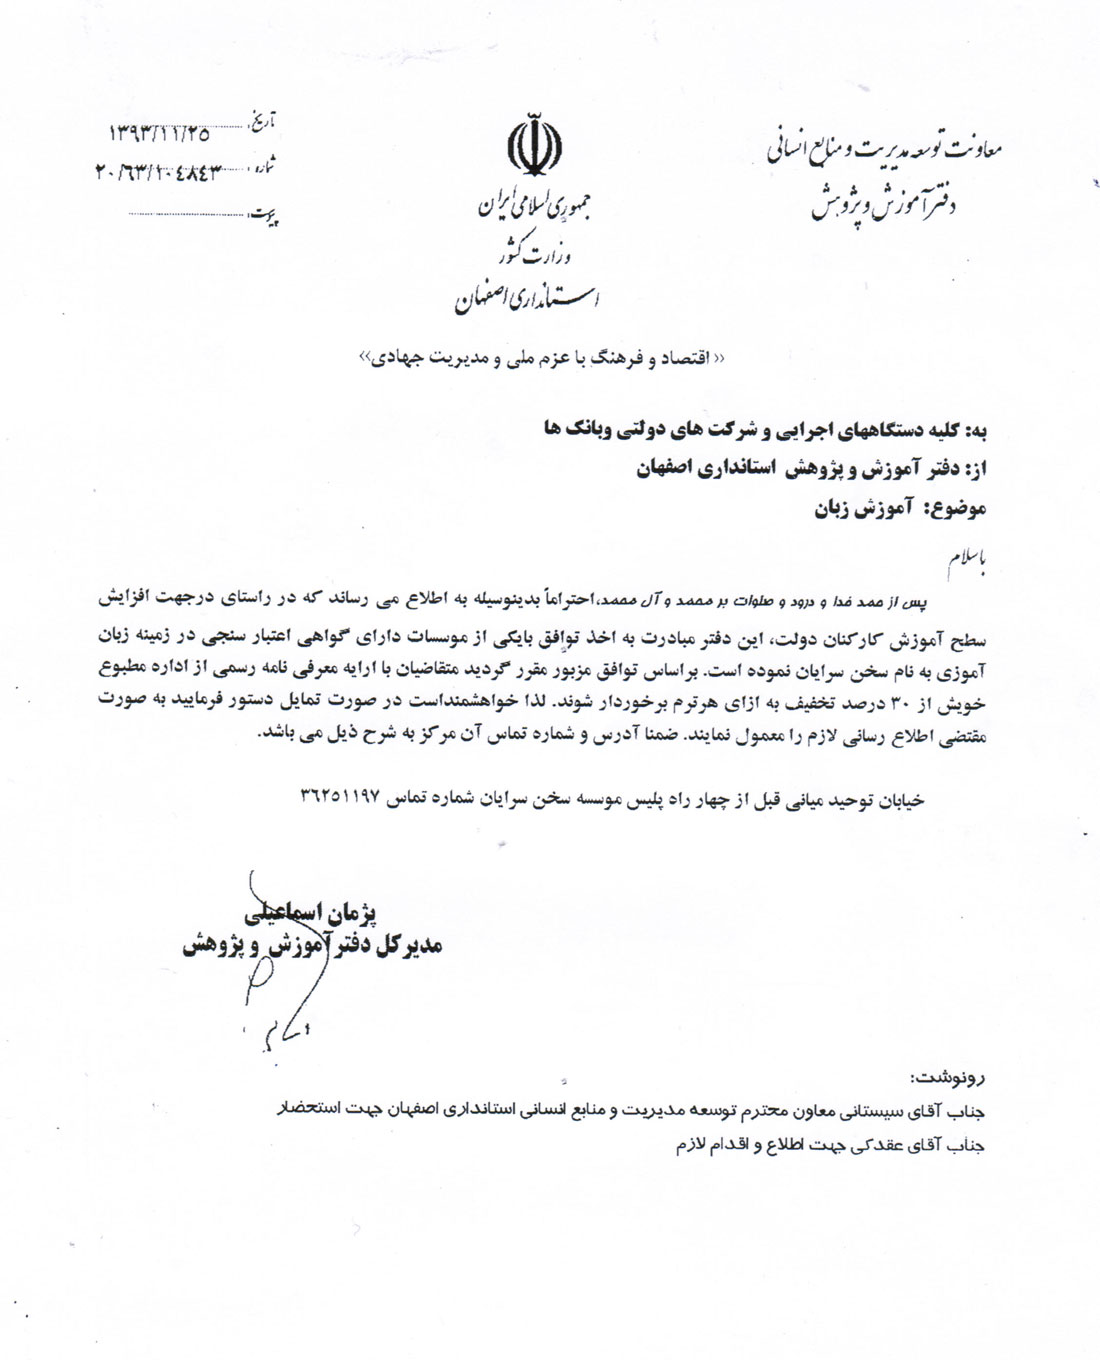 مجوز از استانداری جهت آموزش کارکنان دولتی در اصفهان